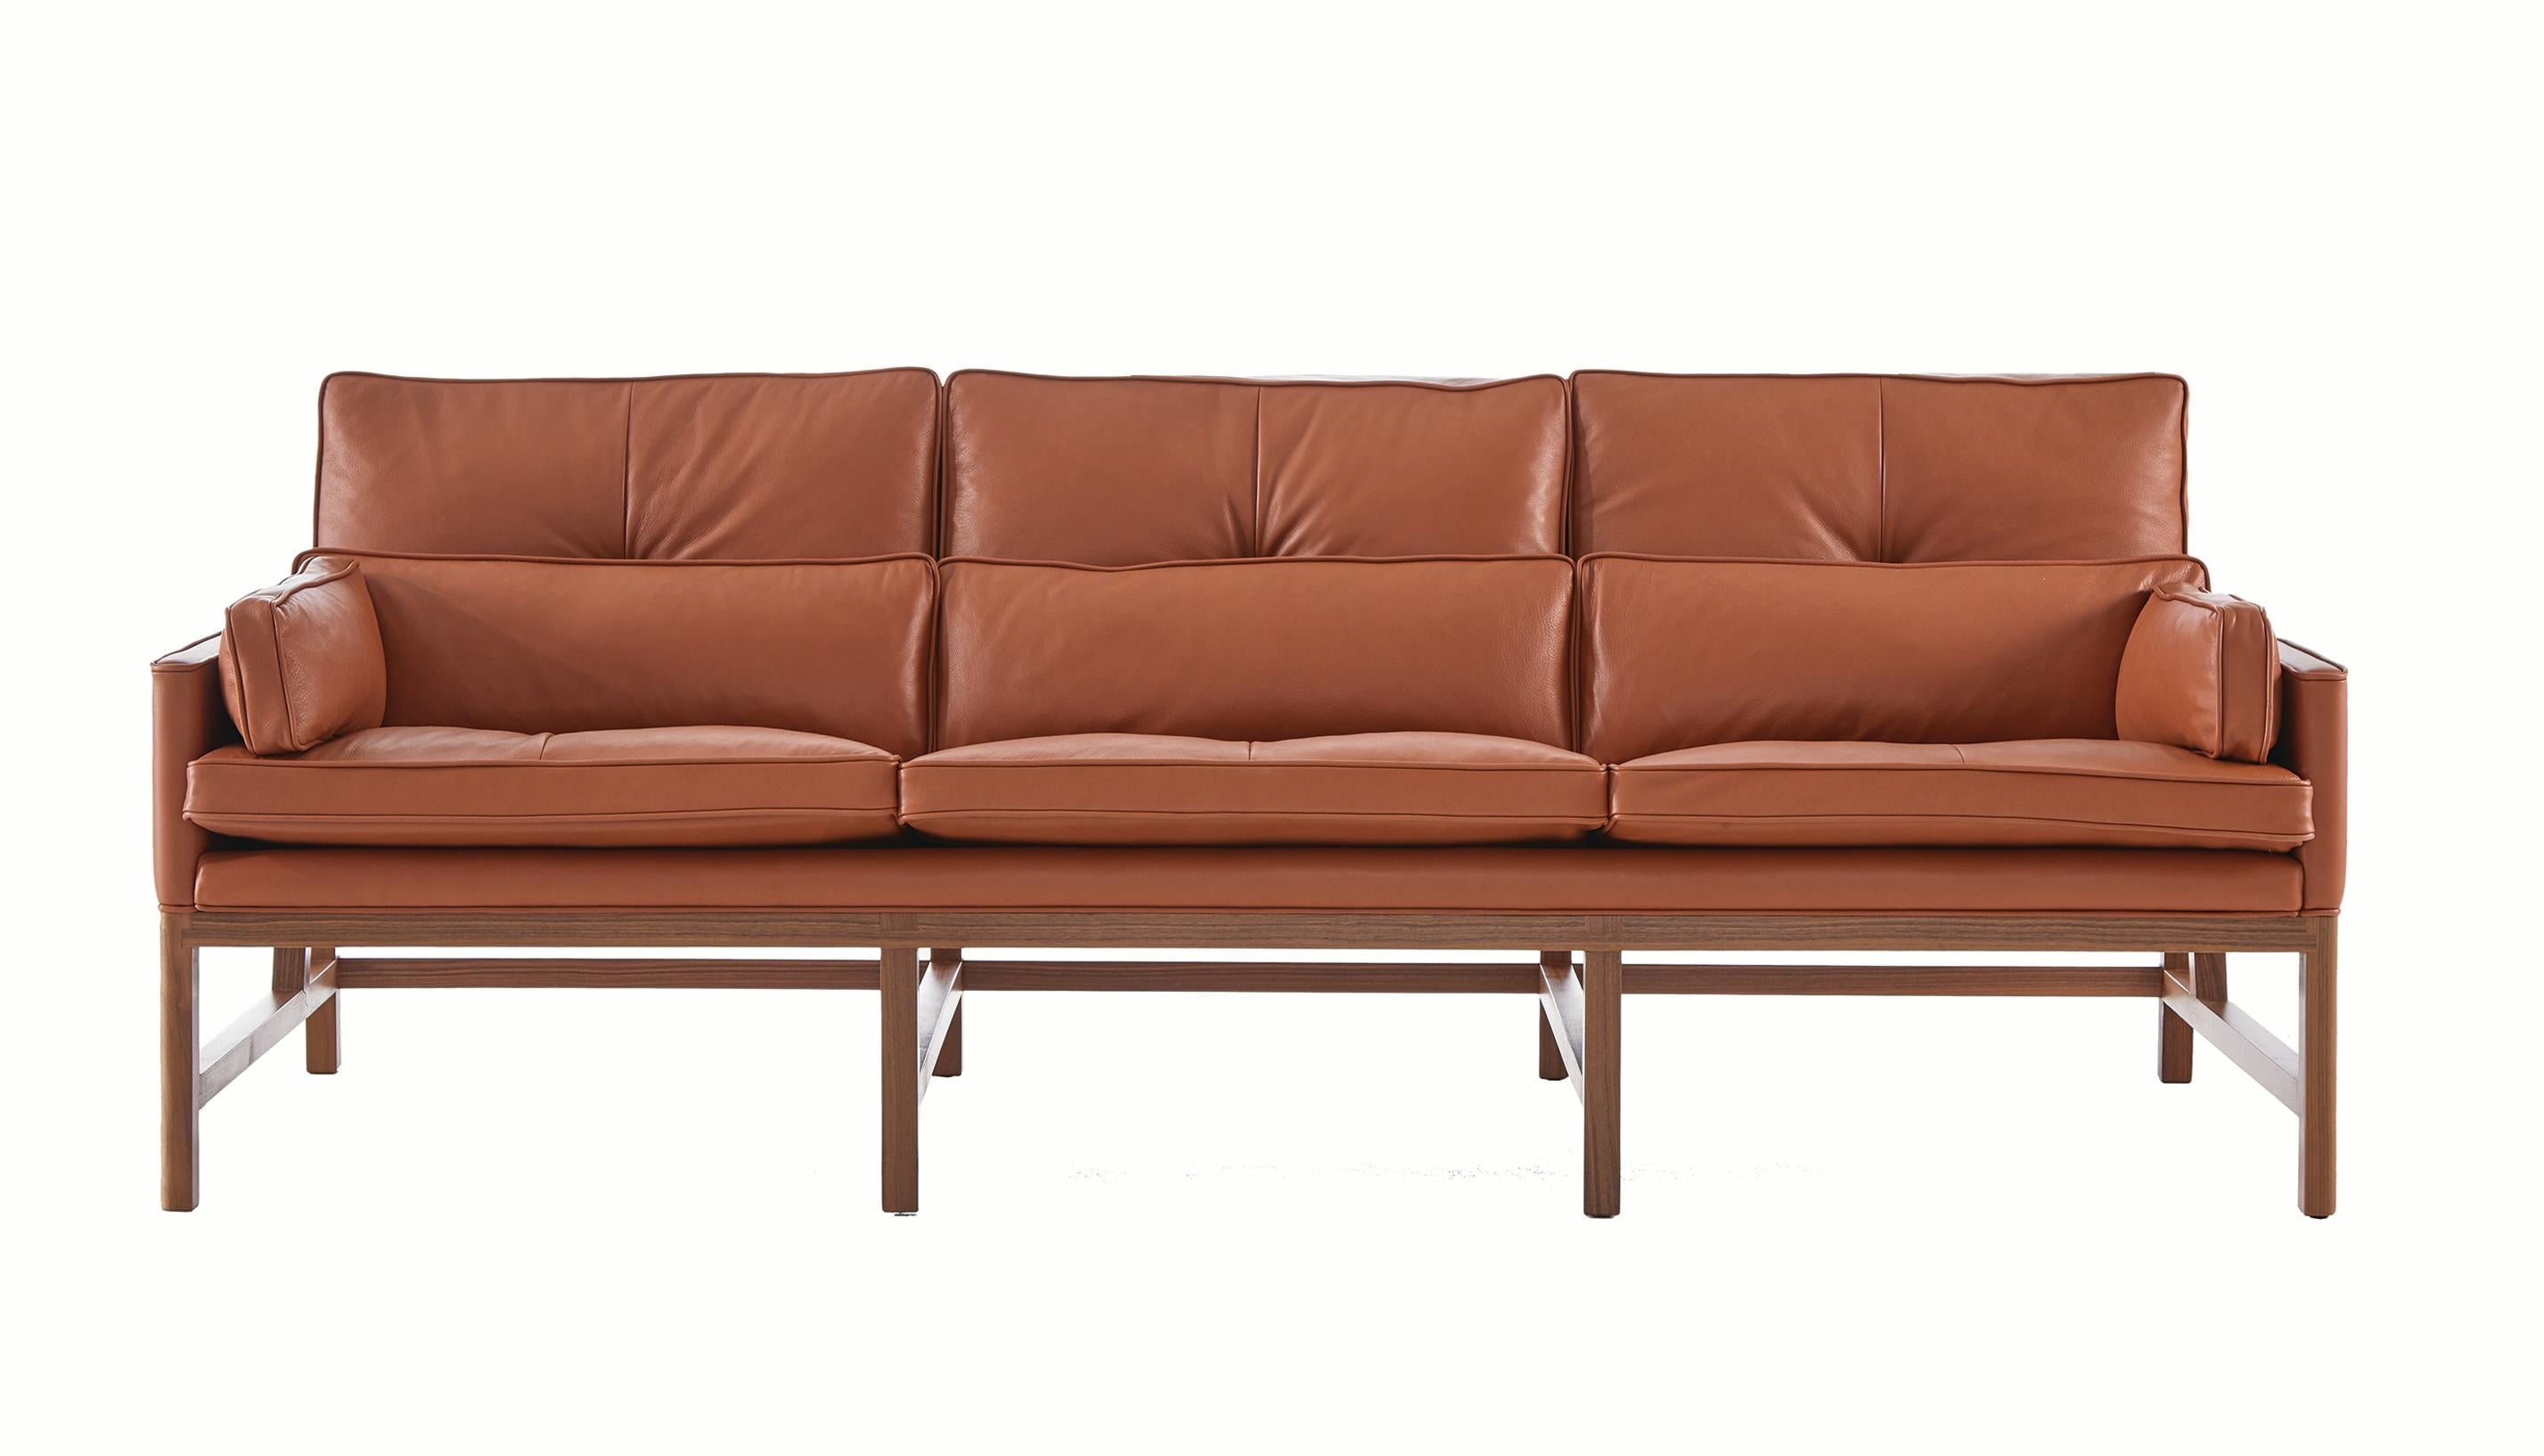 Sofa mit niedriger Rückenlehne und Holzrahmen aus Nussbaum und Leder, entworfen von Craig Bassam